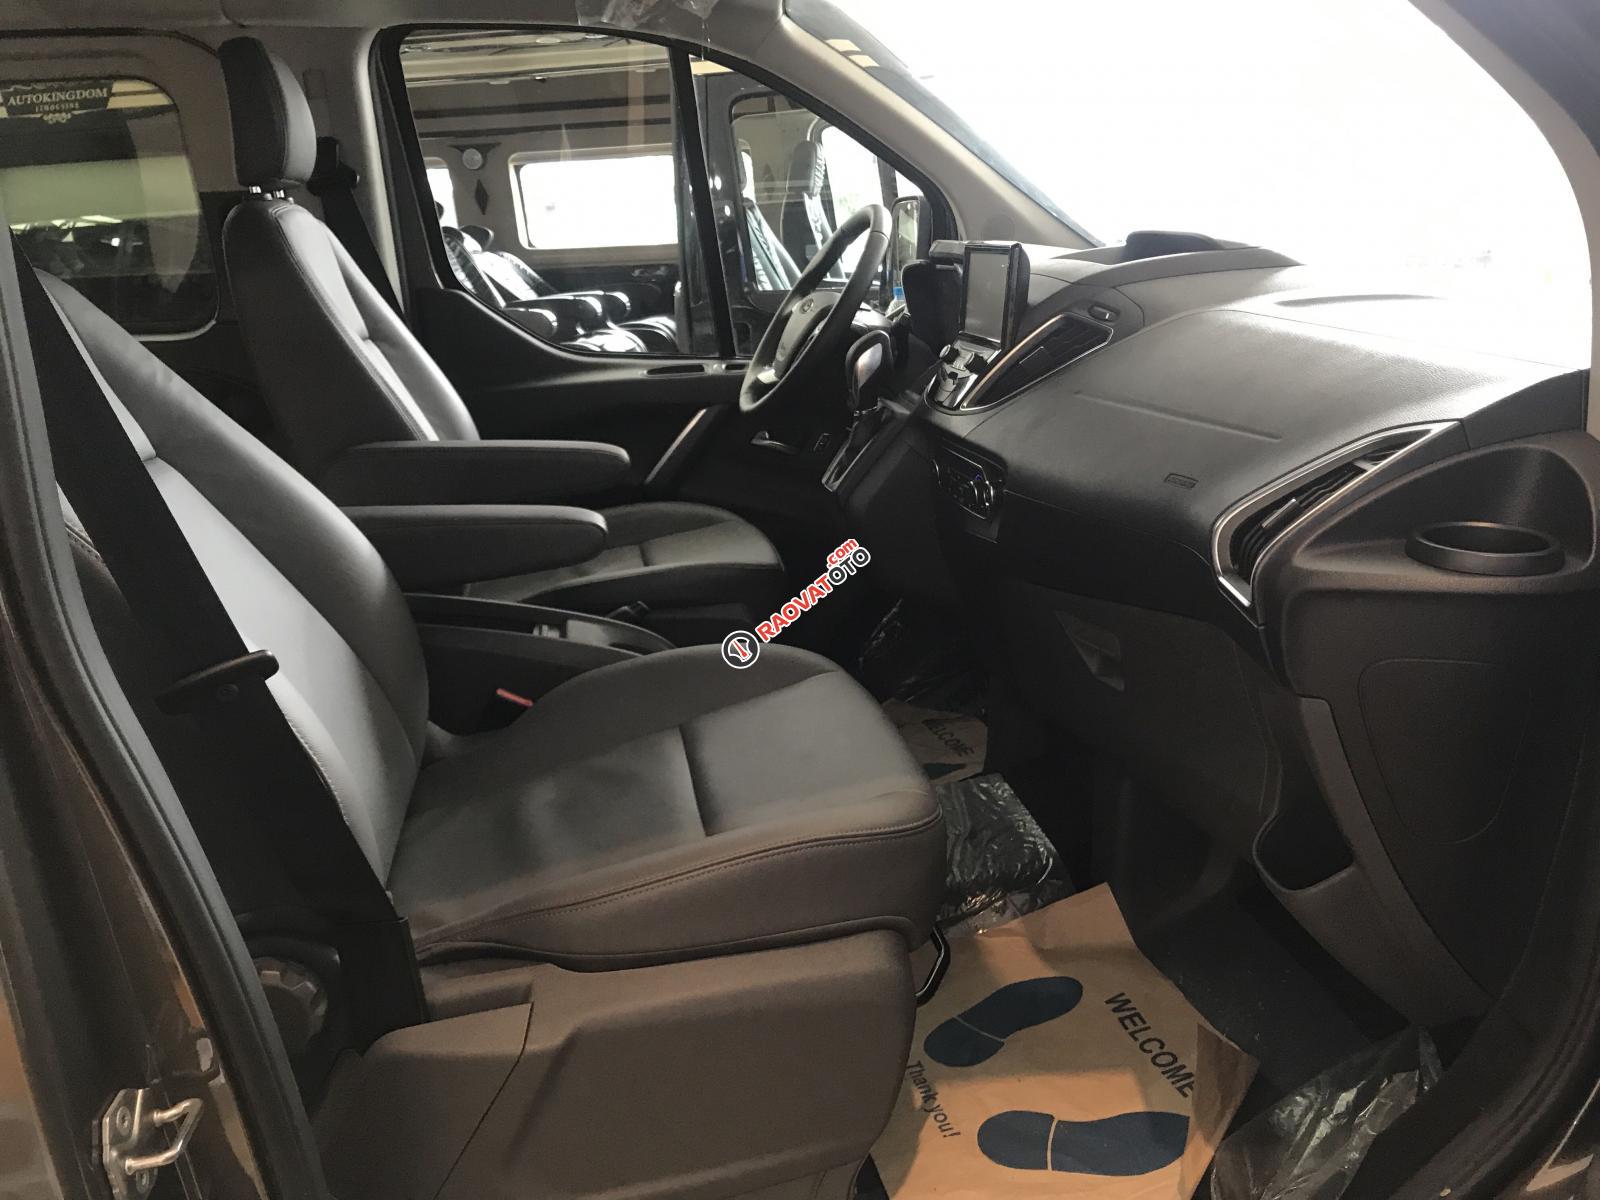 Ford Tourneo 2019 MPV thế hệ mới dòng xe gia đình đỉnh cao, đẹp xuất sắc-5